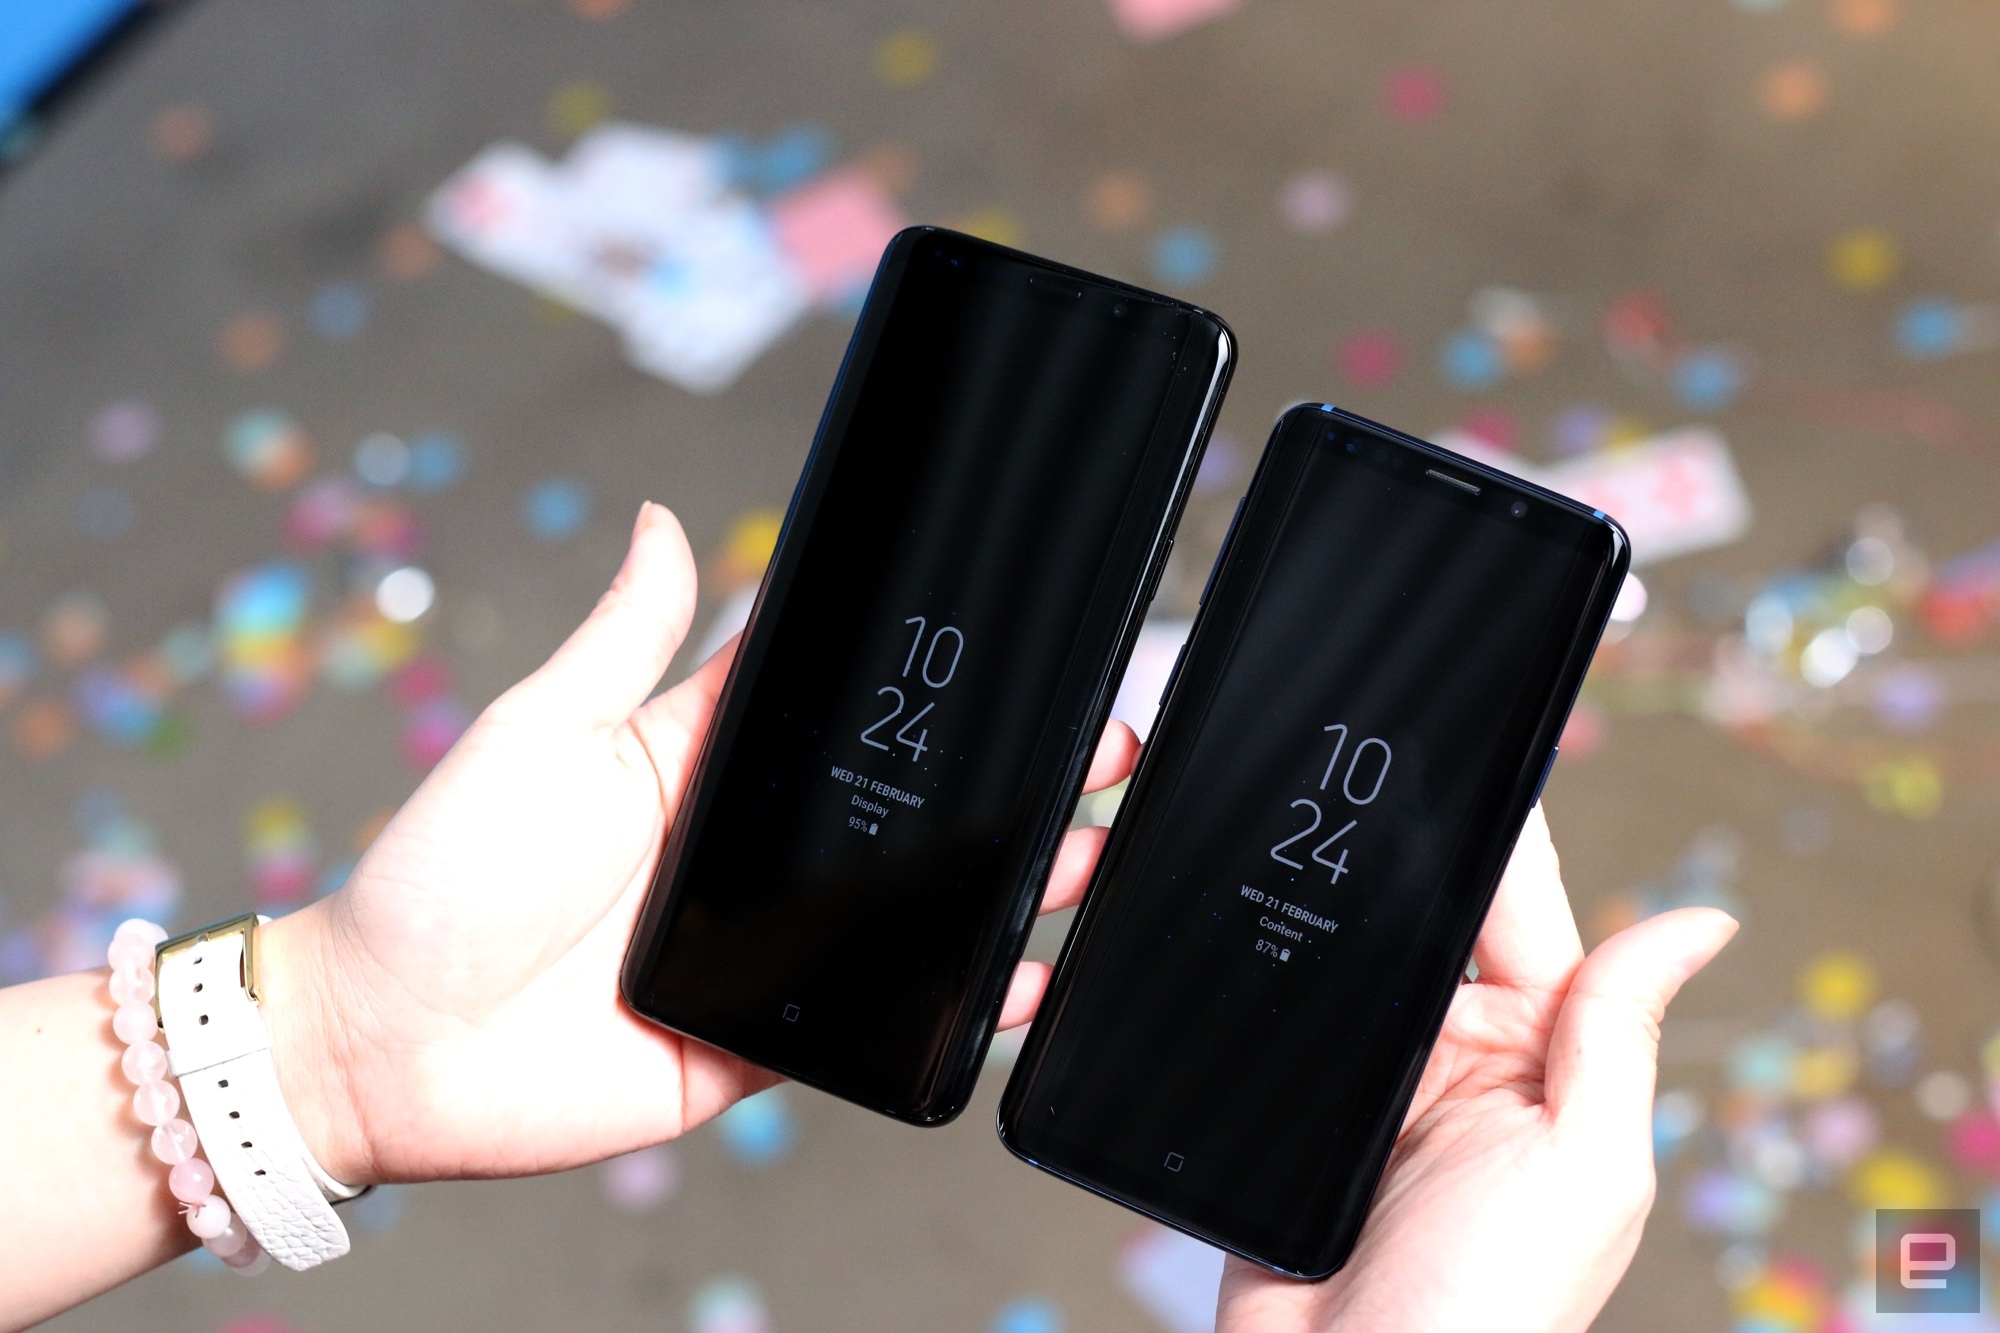 Cận cảnh Galaxy S9/S9+:
Thiết kế thay đổi nhỏ, trải nghiệm tốt hơn nhiều